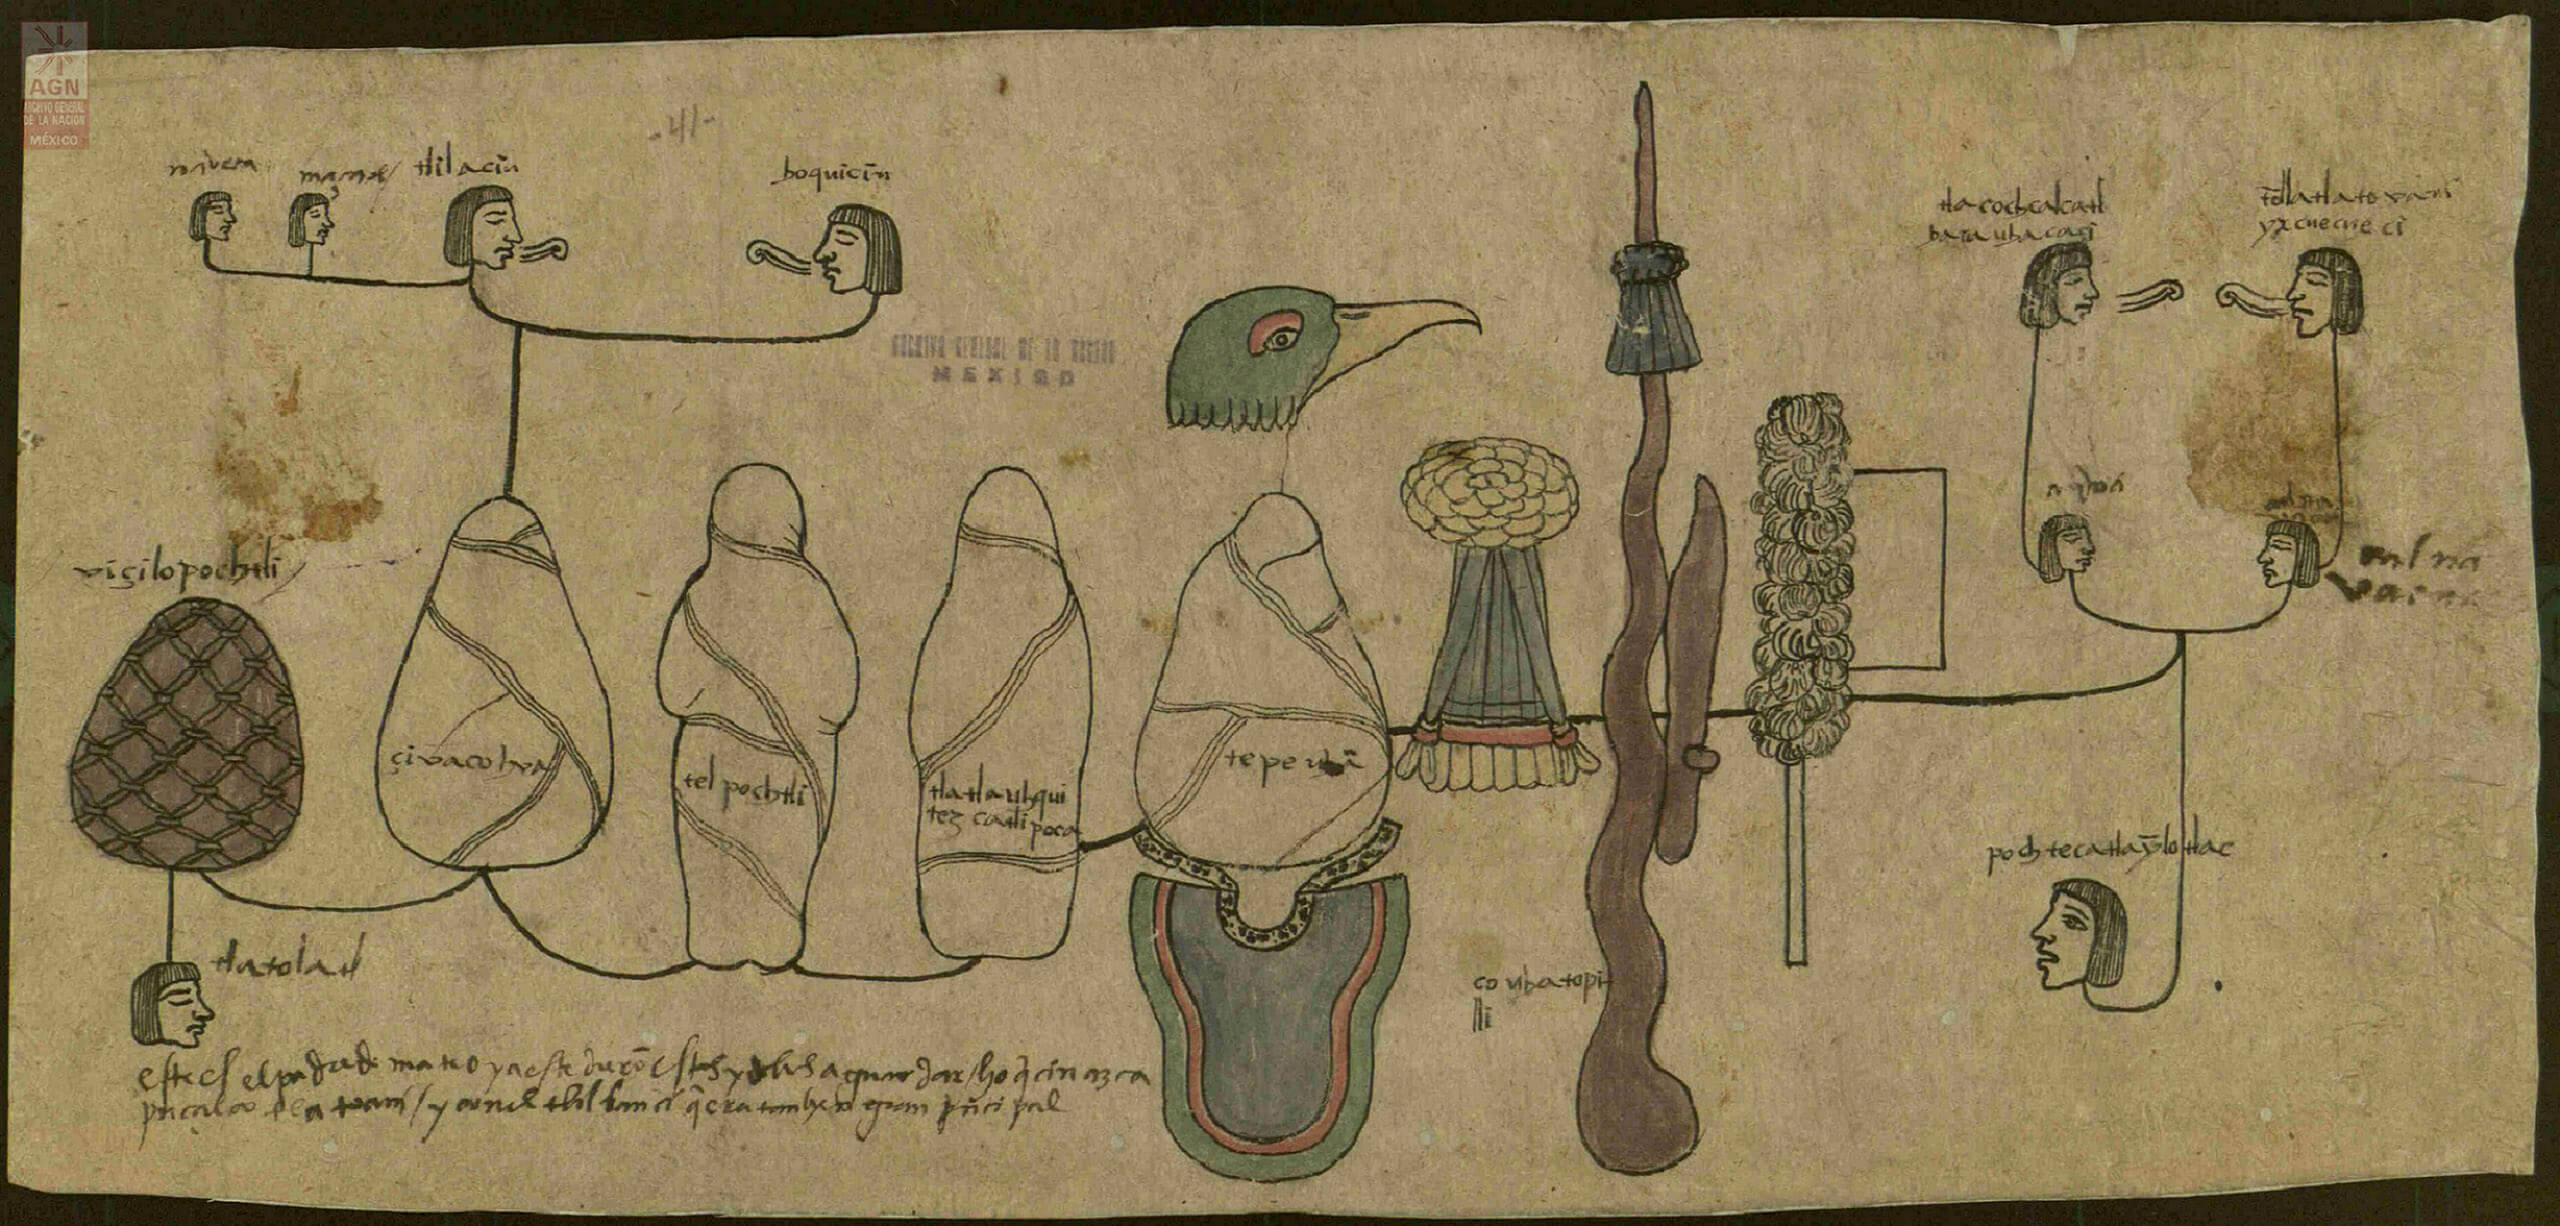 Ídolos del templo de Huitzilopochtli, Mexico-Tenochtitlan | In Tlilli in Tlapalli. Imágenes de la nueva tierra: identidad indígena después de la conquista | Museo Amparo, Puebla